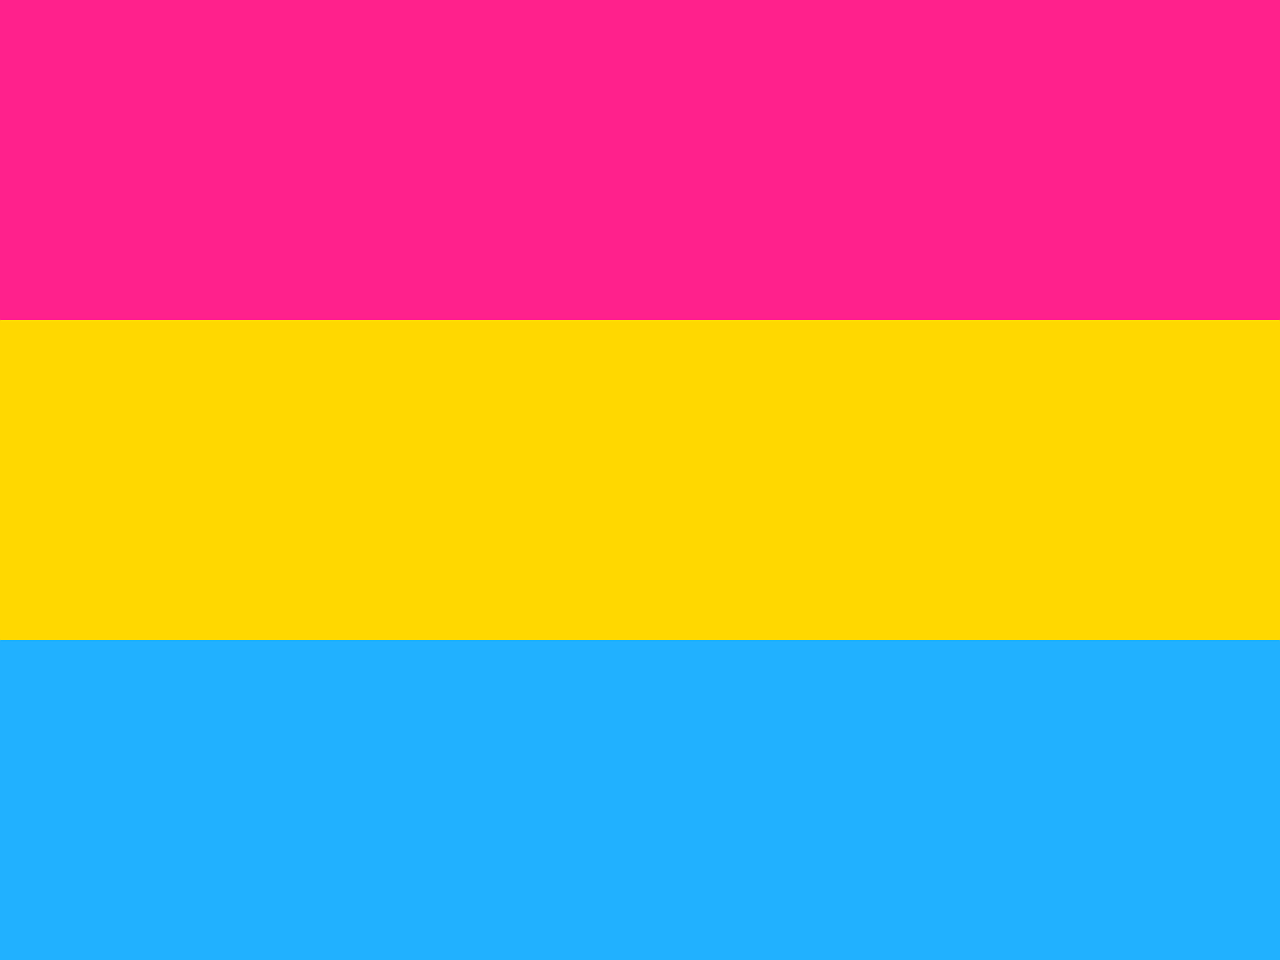 ¿Quién creó la bandera pansexual?